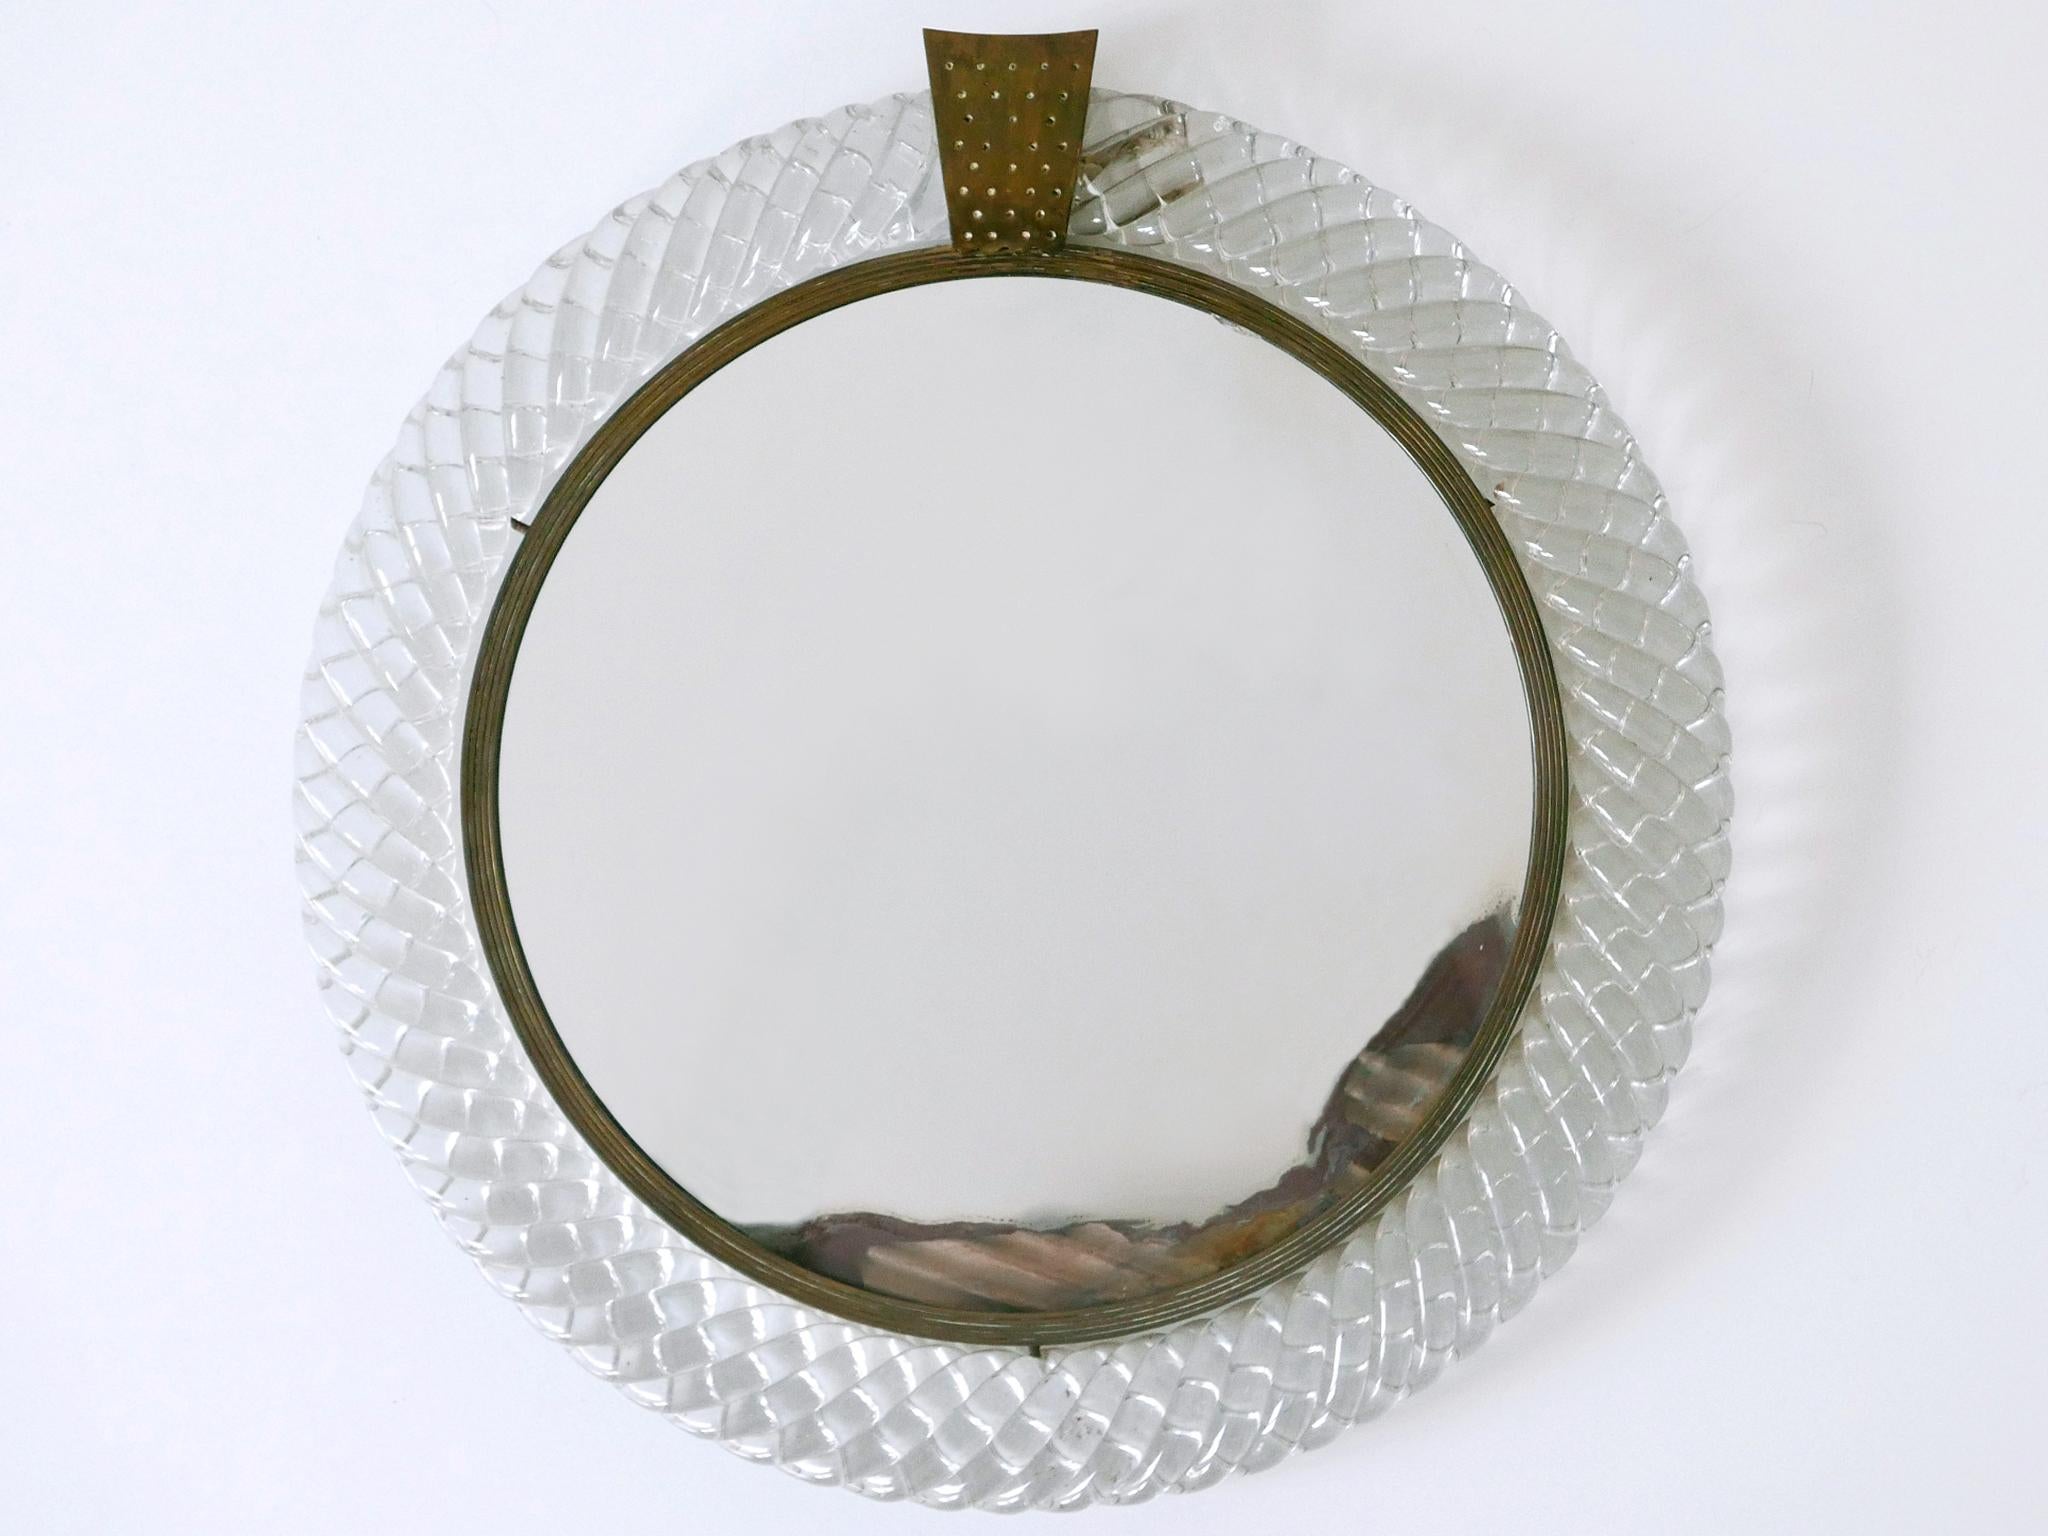 Elegant Murano Glass Treccia Wall Mirror by Carlo Scarpa for Venini Italy 1950s For Sale 5